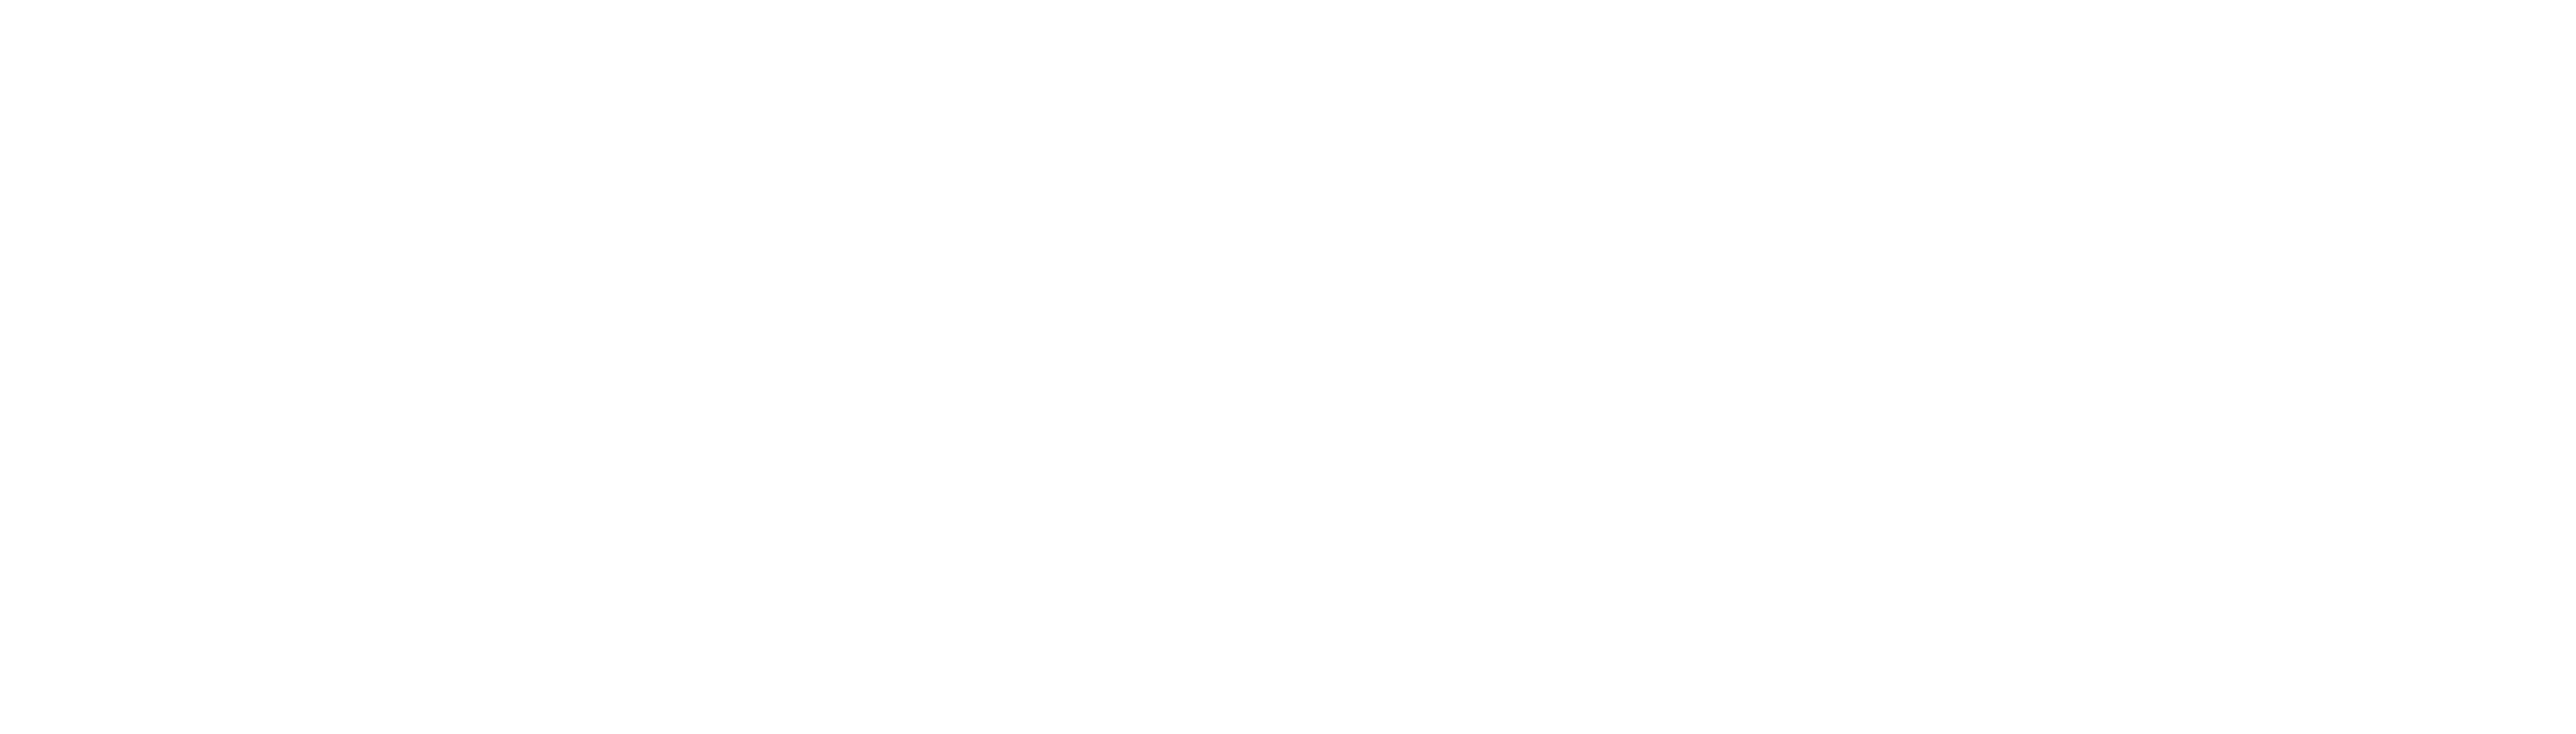 Avaya Logo - Avaya Logo White - VOX Network Solutions